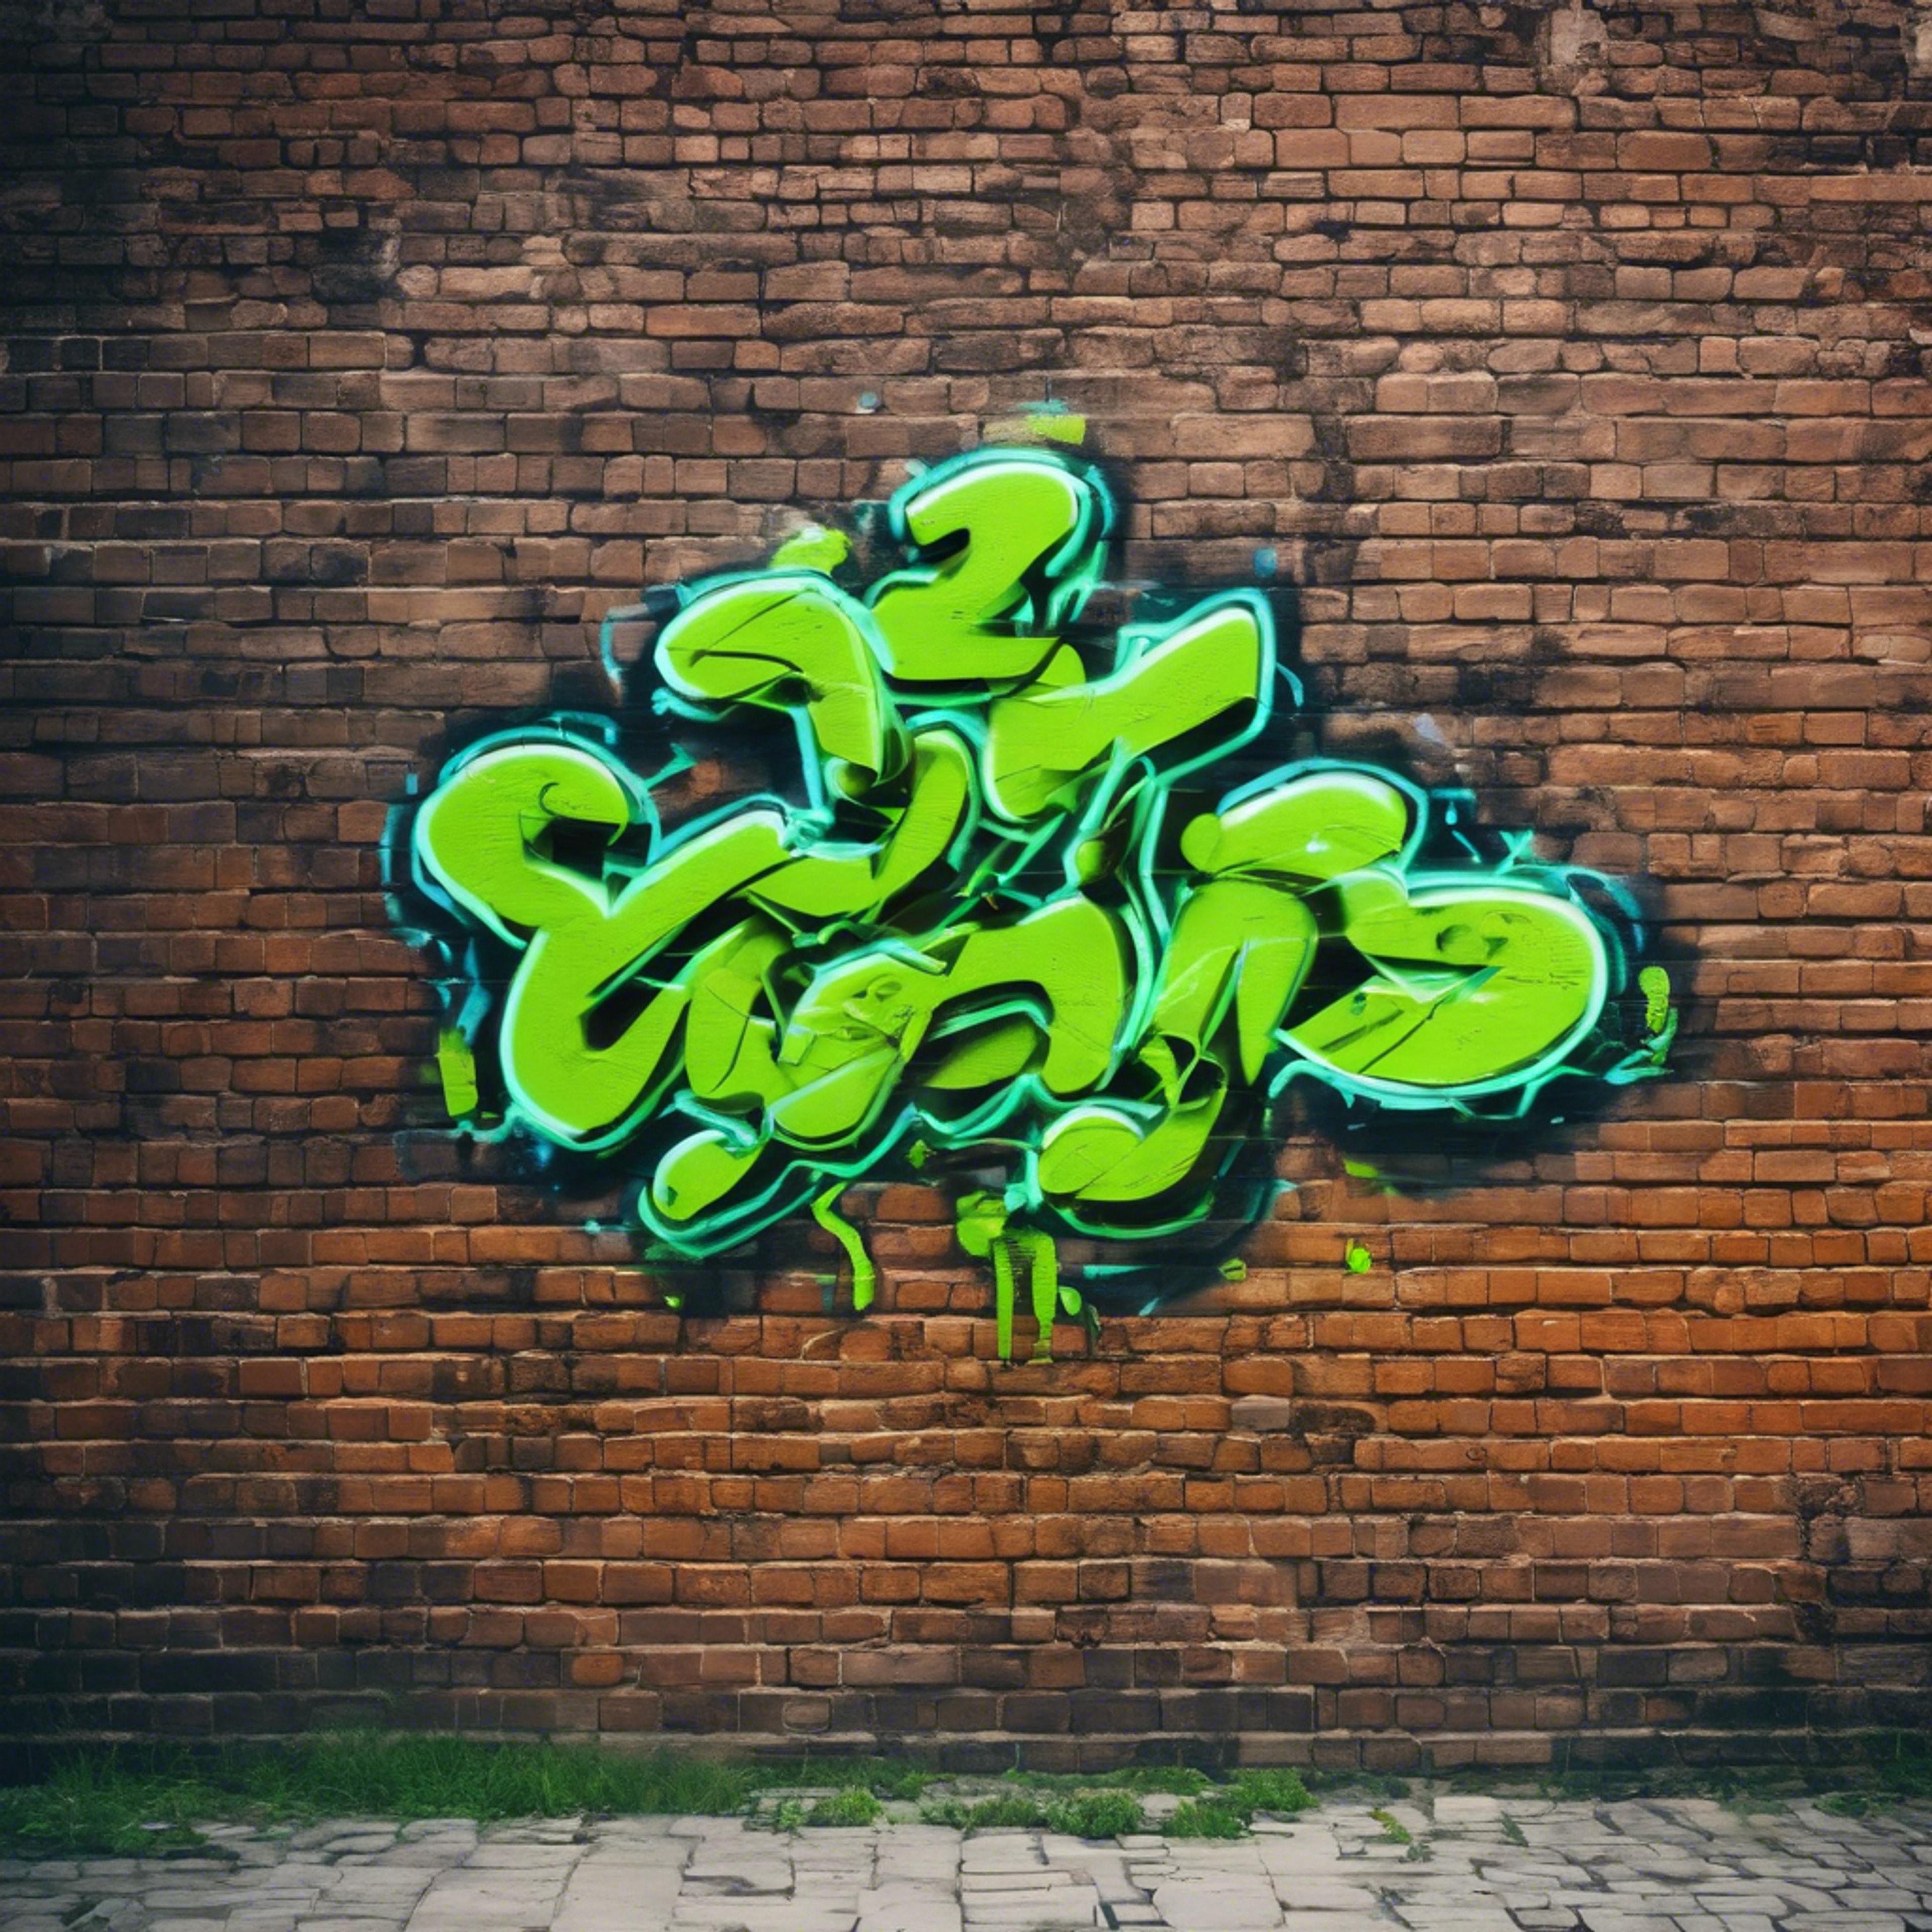 Cool neon green graffiti on an old brick wall in an urban setting. Sfondo[8032604dbabf4a1691c6]